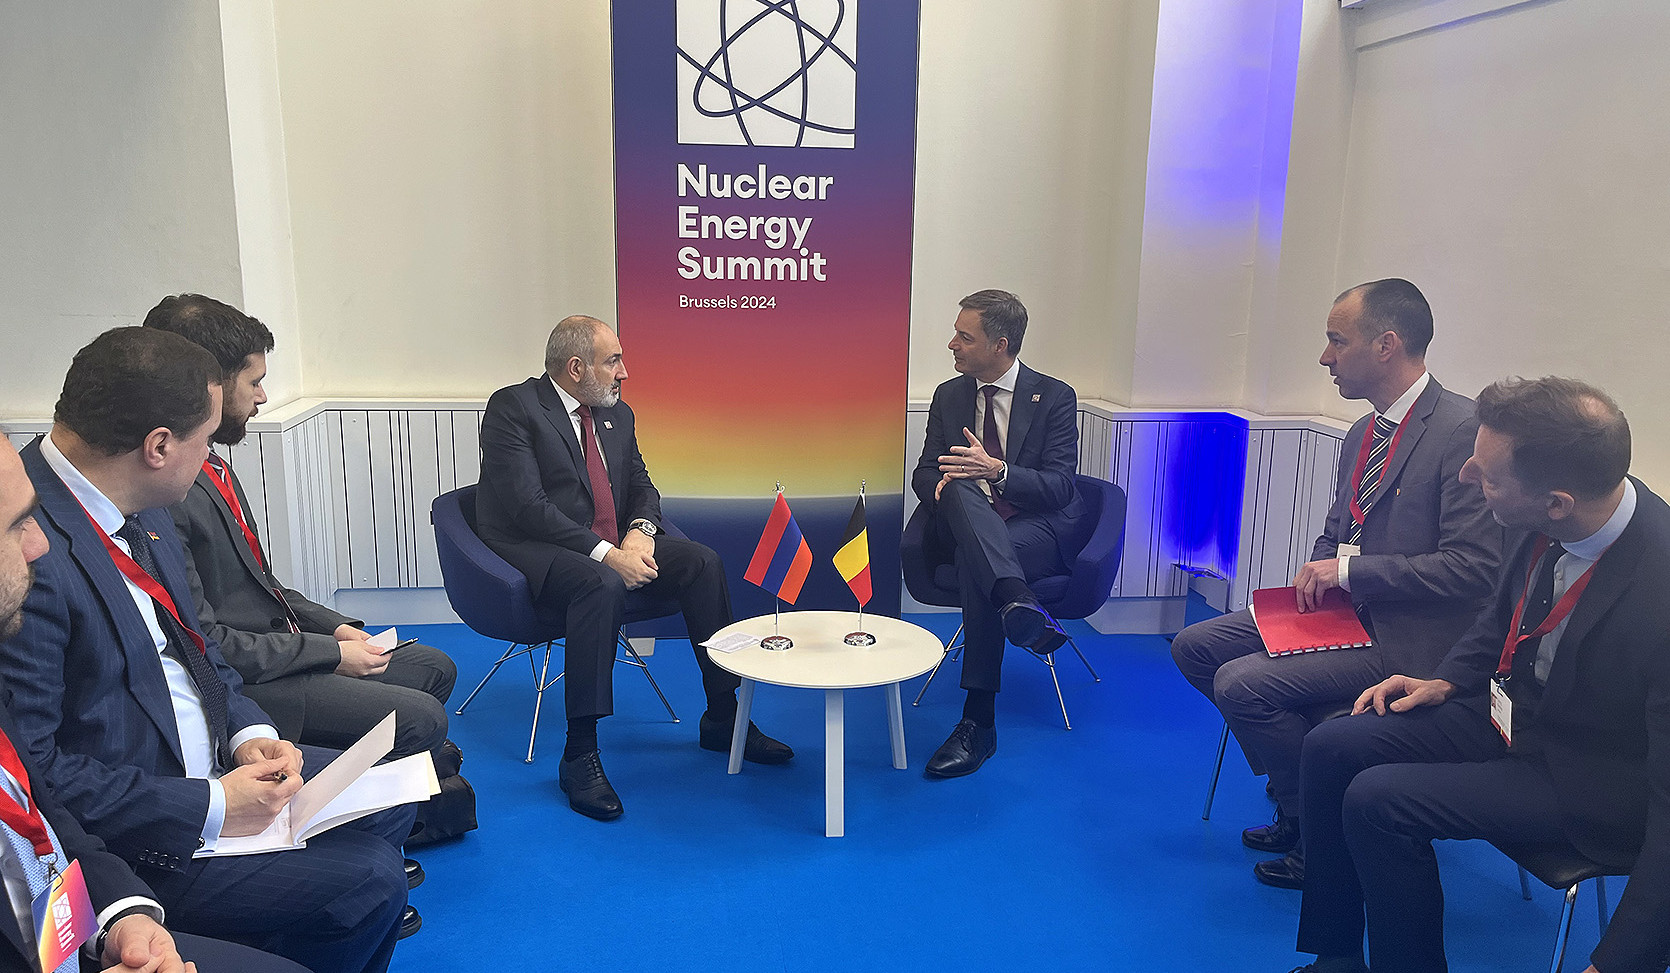 Никол Пашинян представил премьер-министру Бельгии проект «Перекресток мира» и его принципы